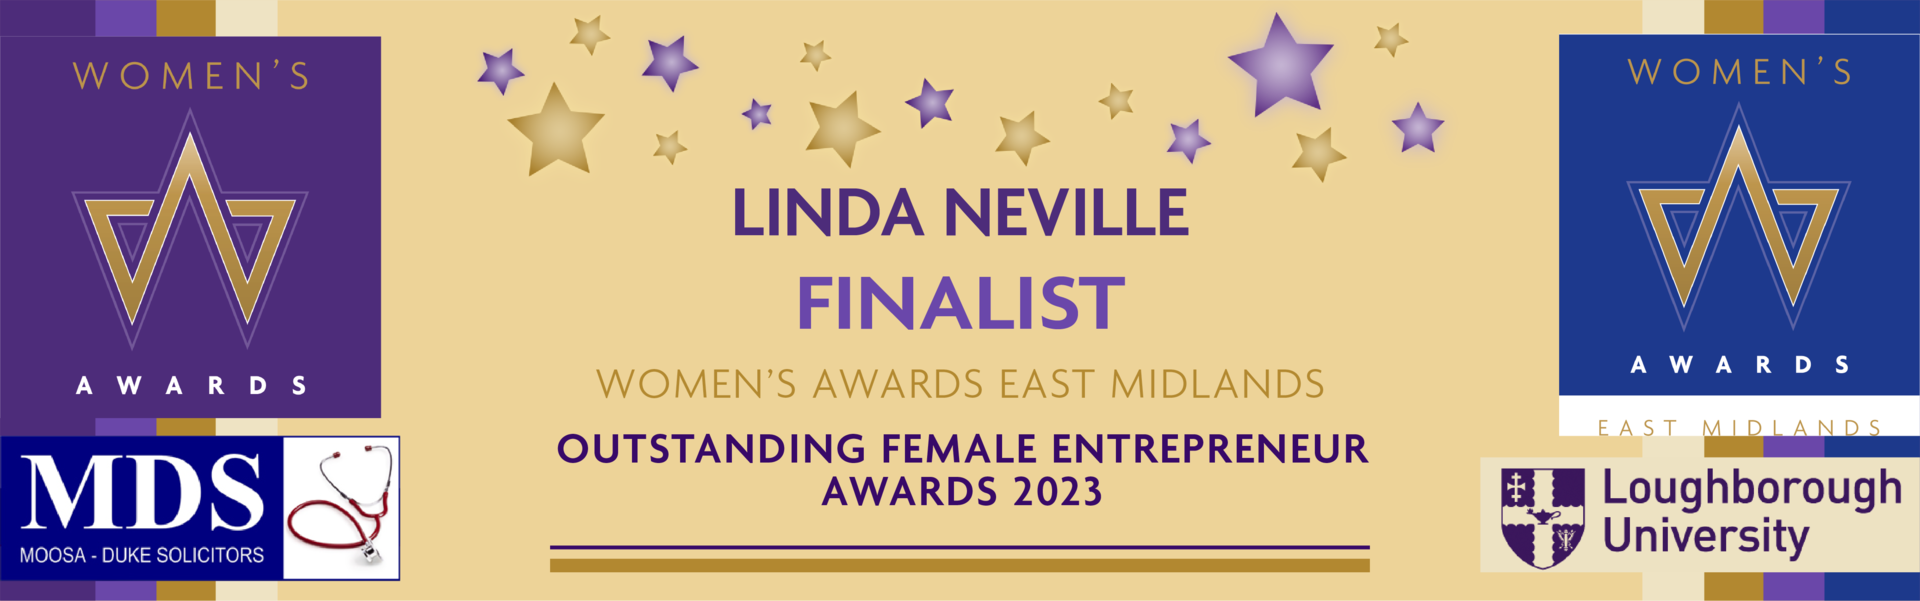 Women's Award's 2023 Outstanding Female Entrepreneur Award Winner Banner